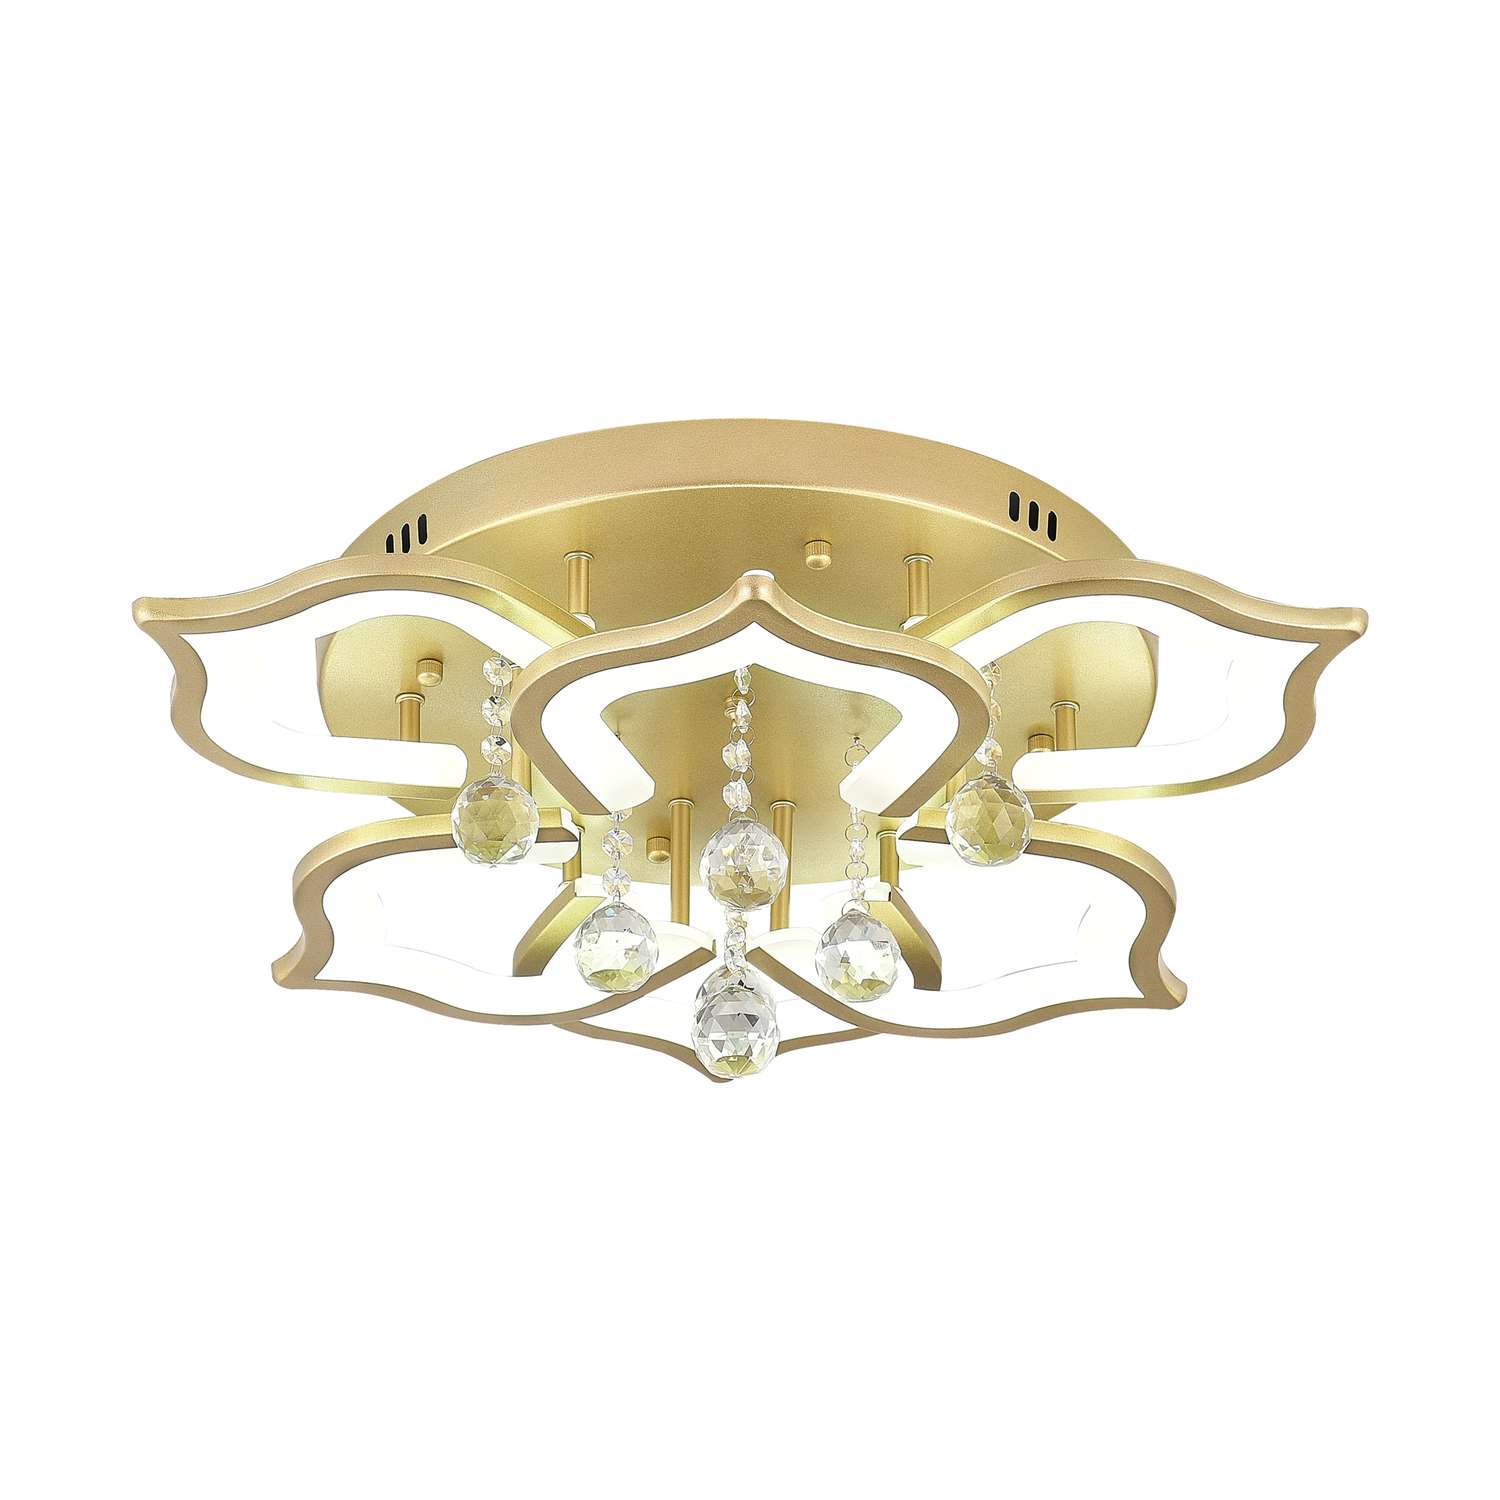 Светодиодный светильник NATALI KOVALTSEVA люстра 100W золотой LED - фото 5